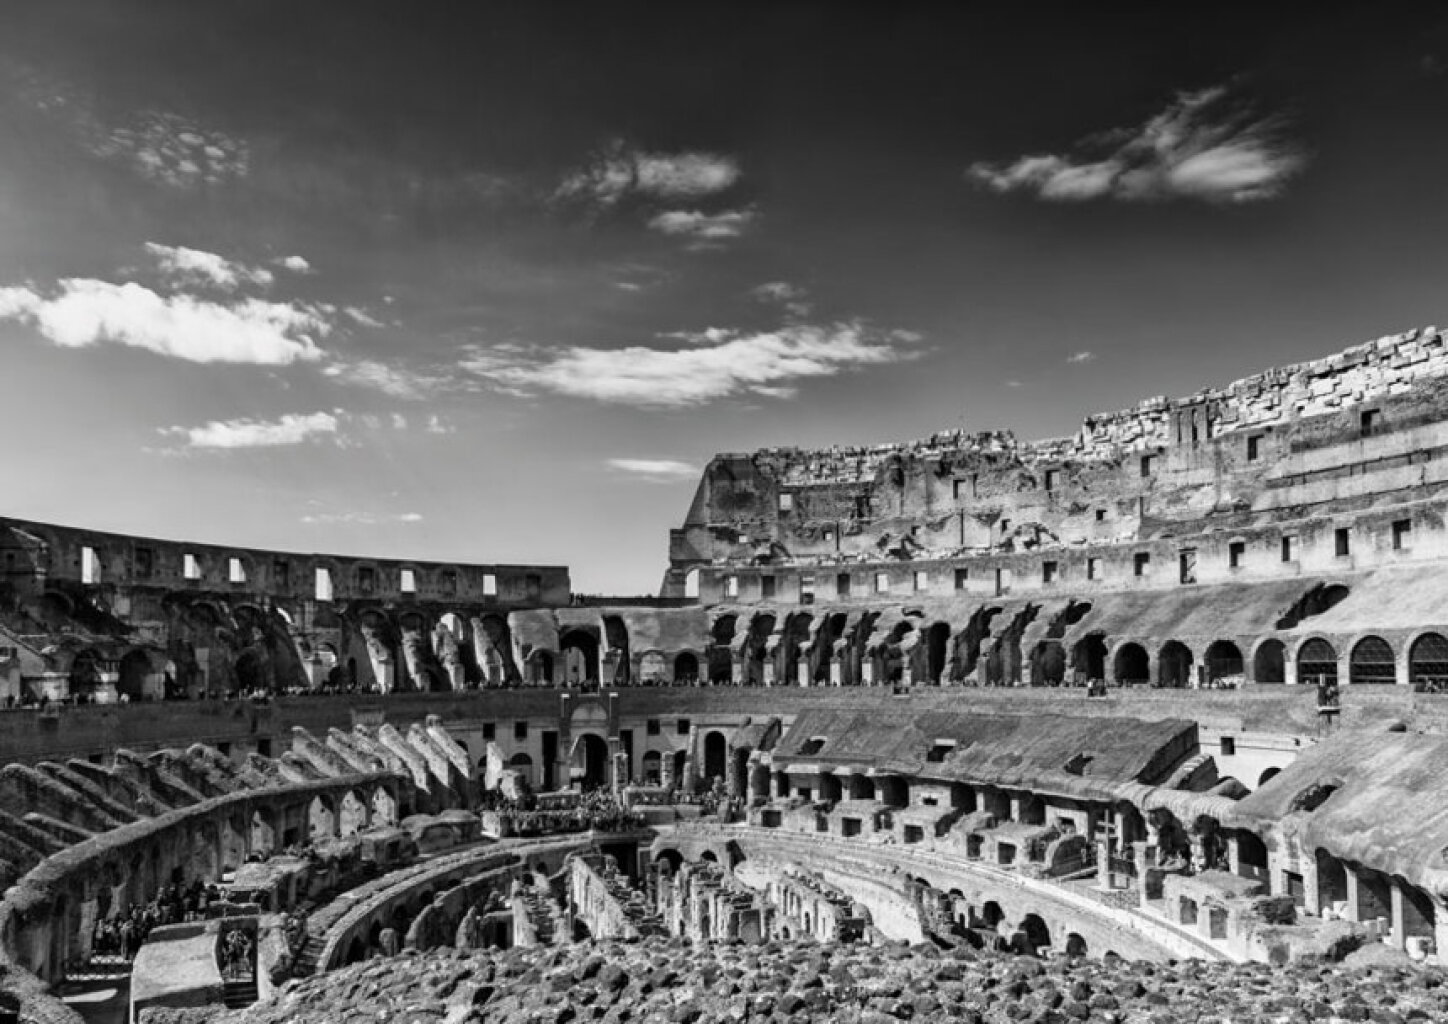 Quadro Colosseo (Interno II) P&B por André Pizzolo -  CATEGORIAS